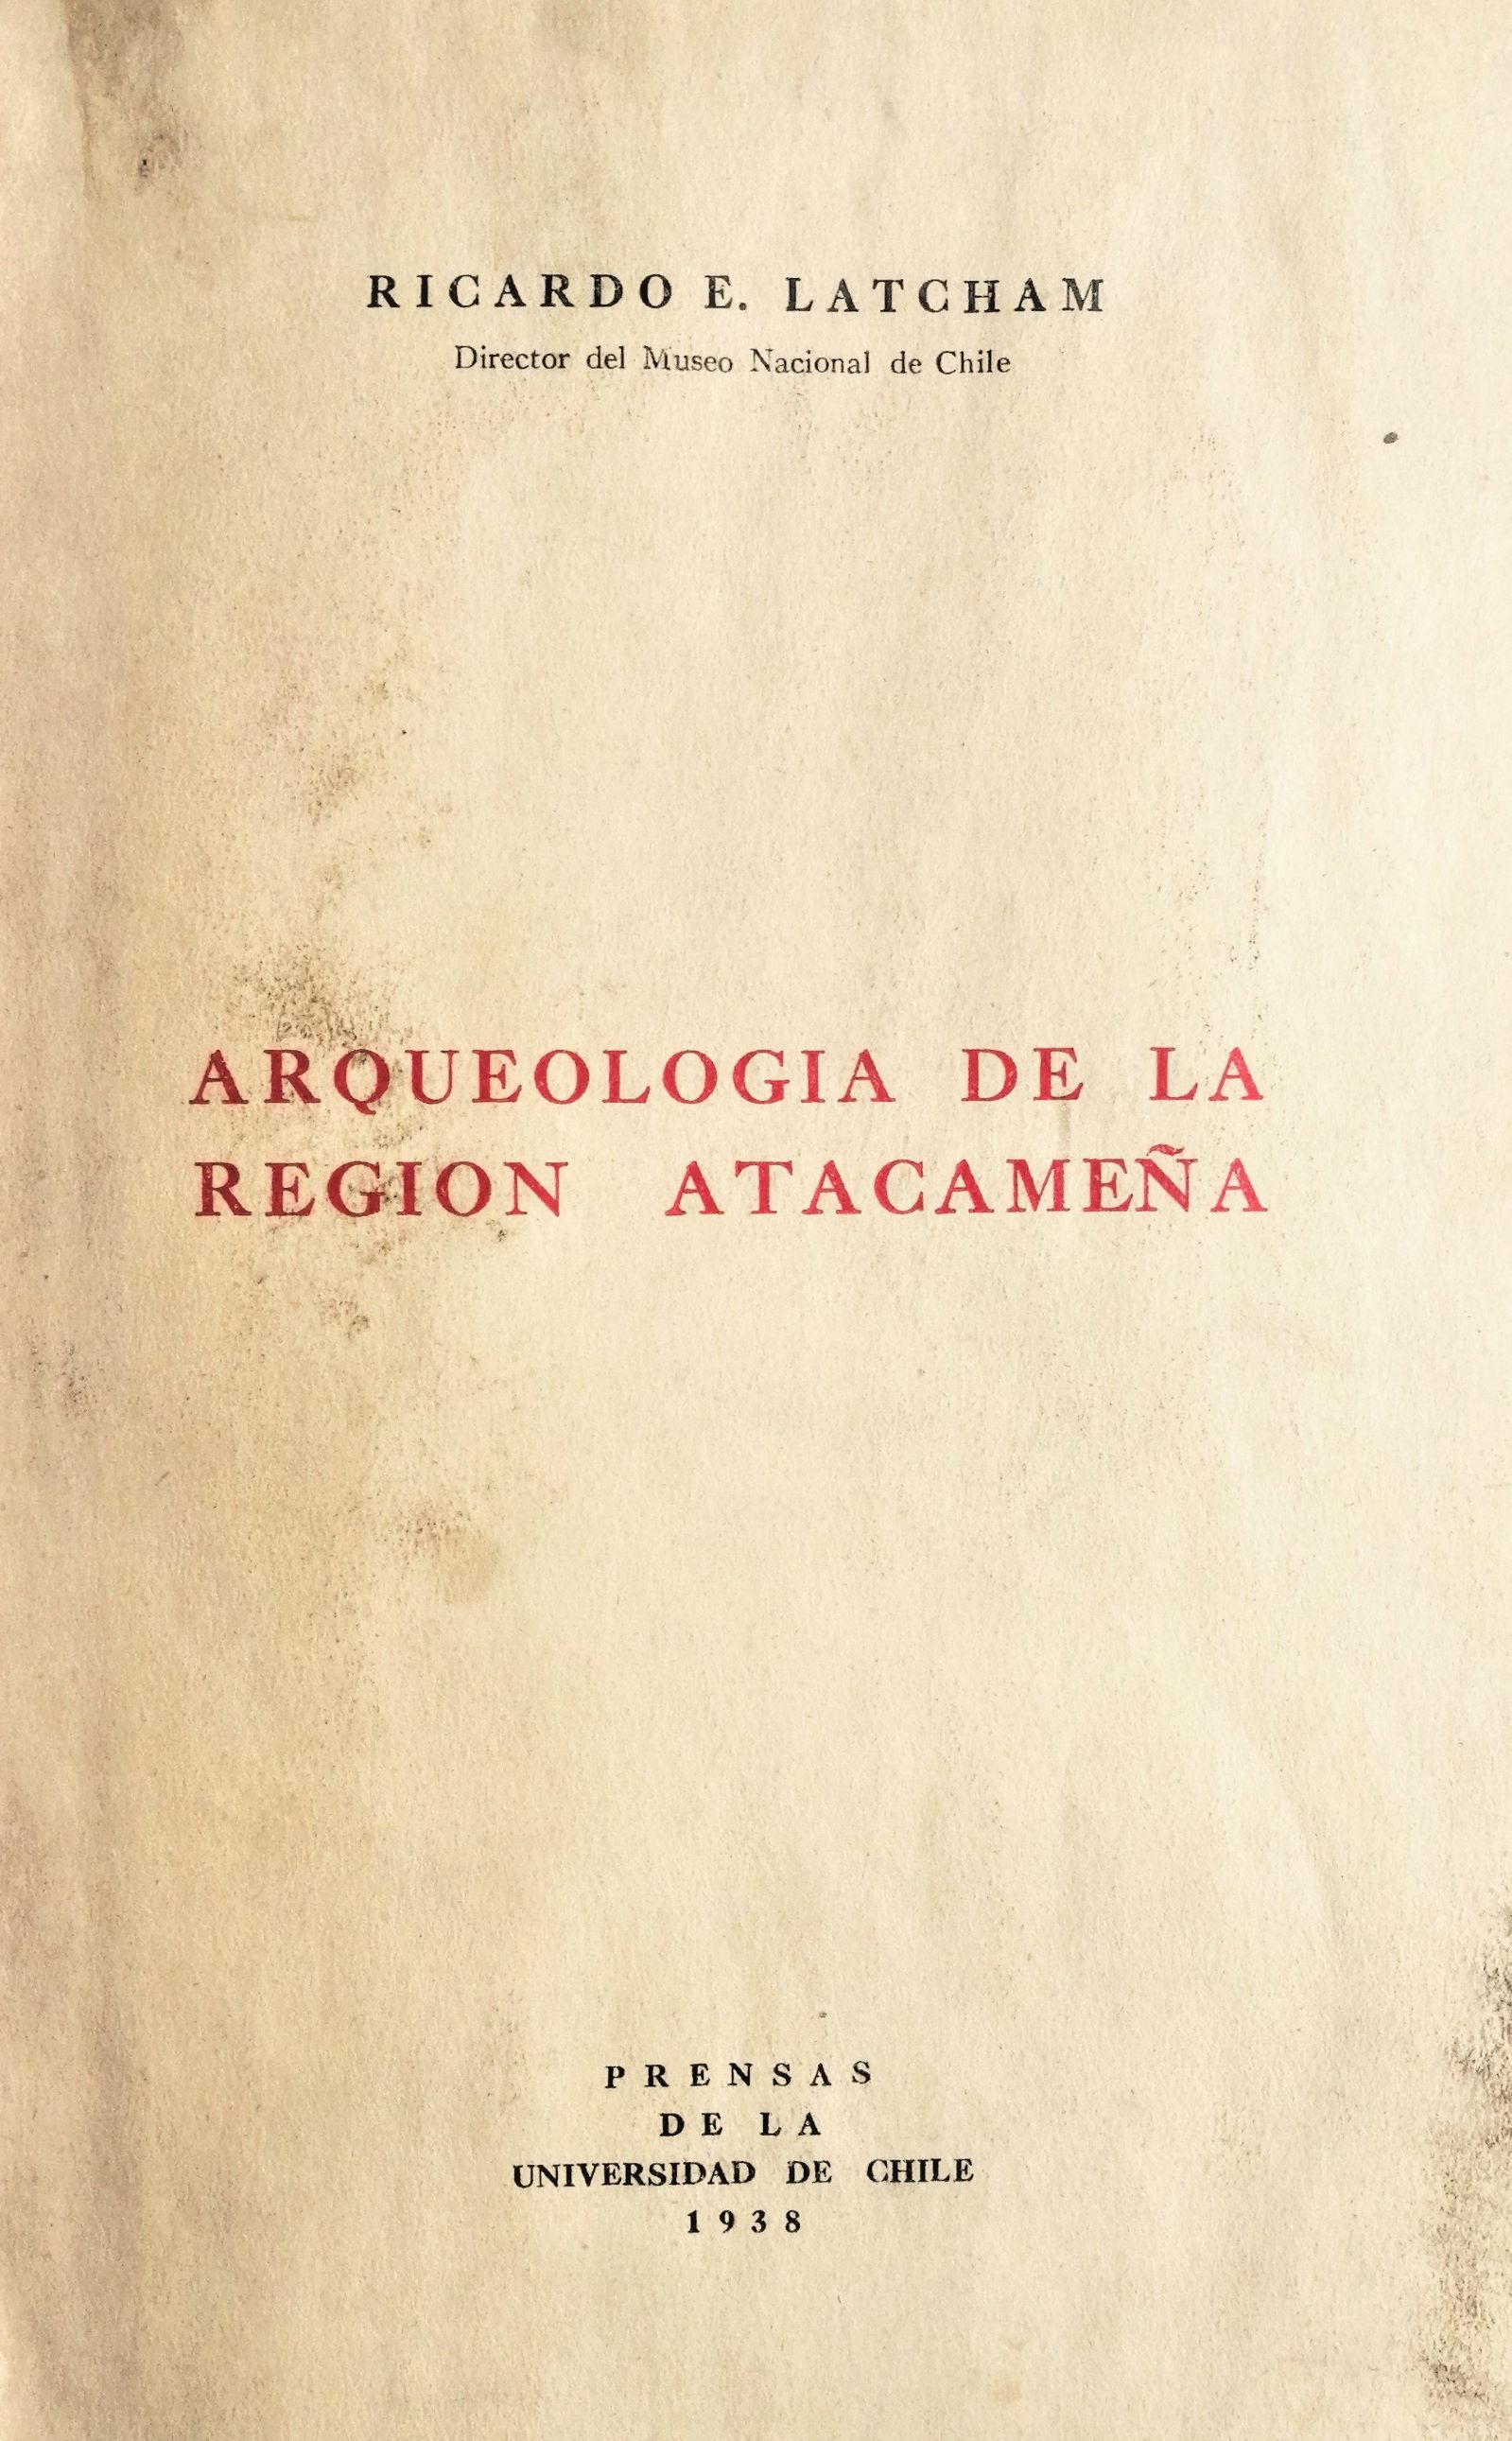 Ricardo E. Latcham - Arqueología de la región atacameña